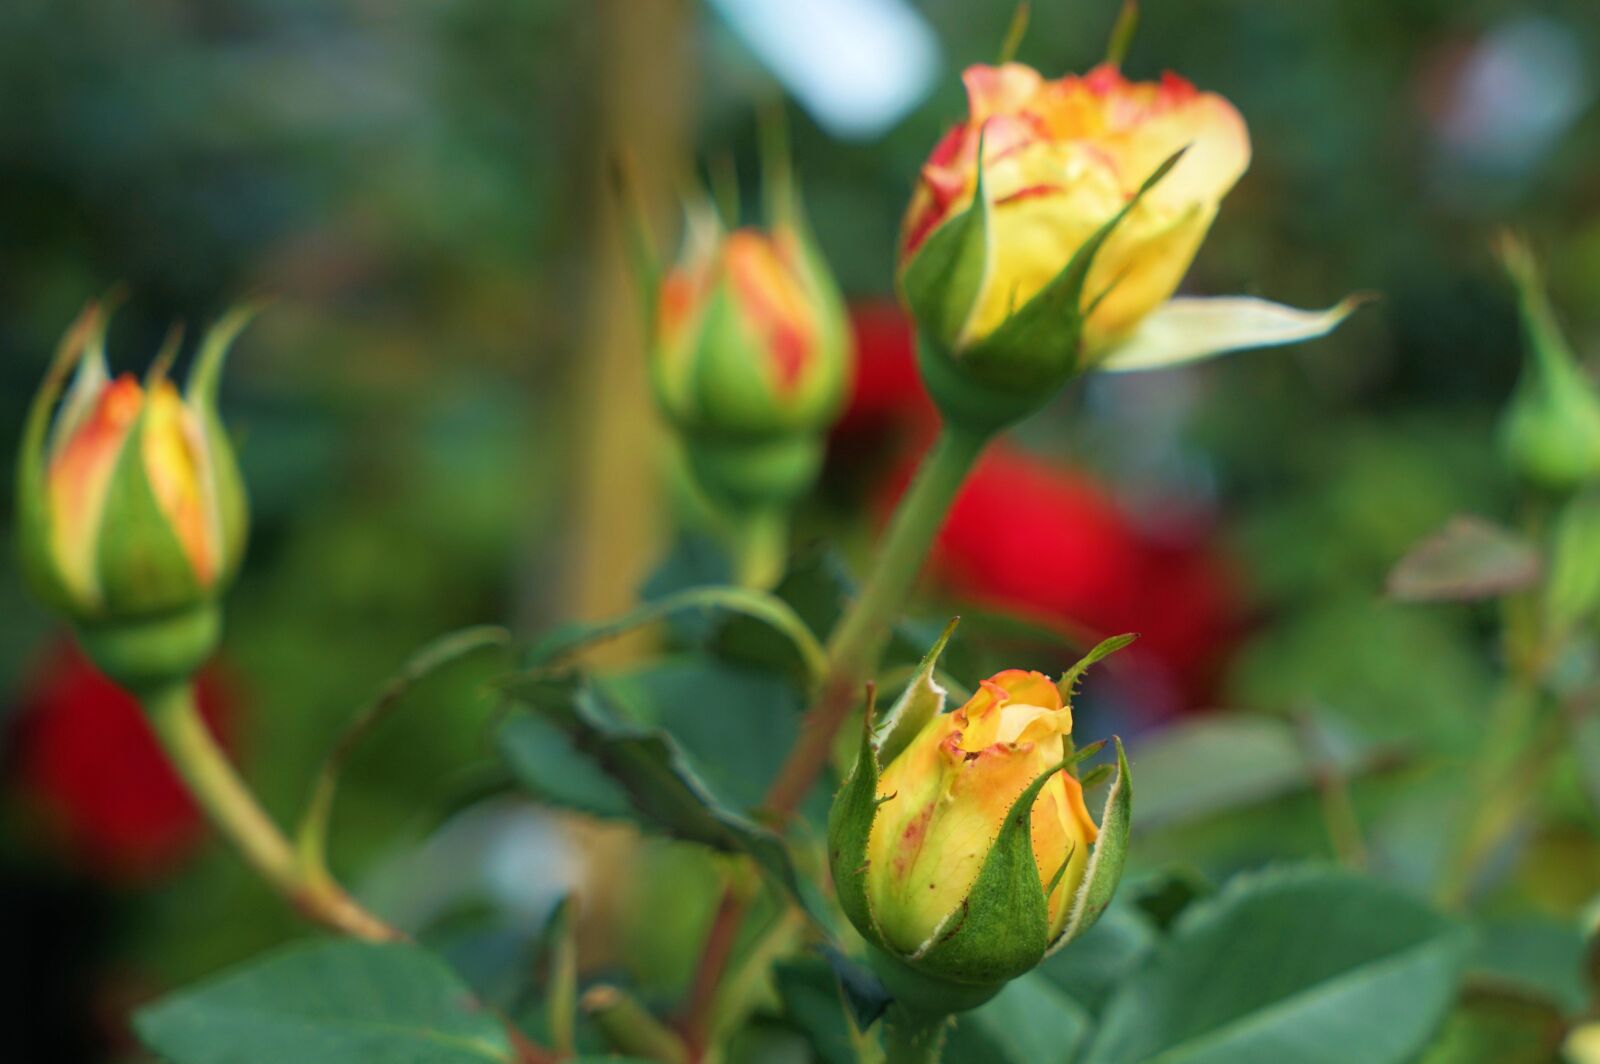 Sony Vario Tessar T* FE 24-70mm F4 ZA OSS sample photo. Rose, love, flower photography